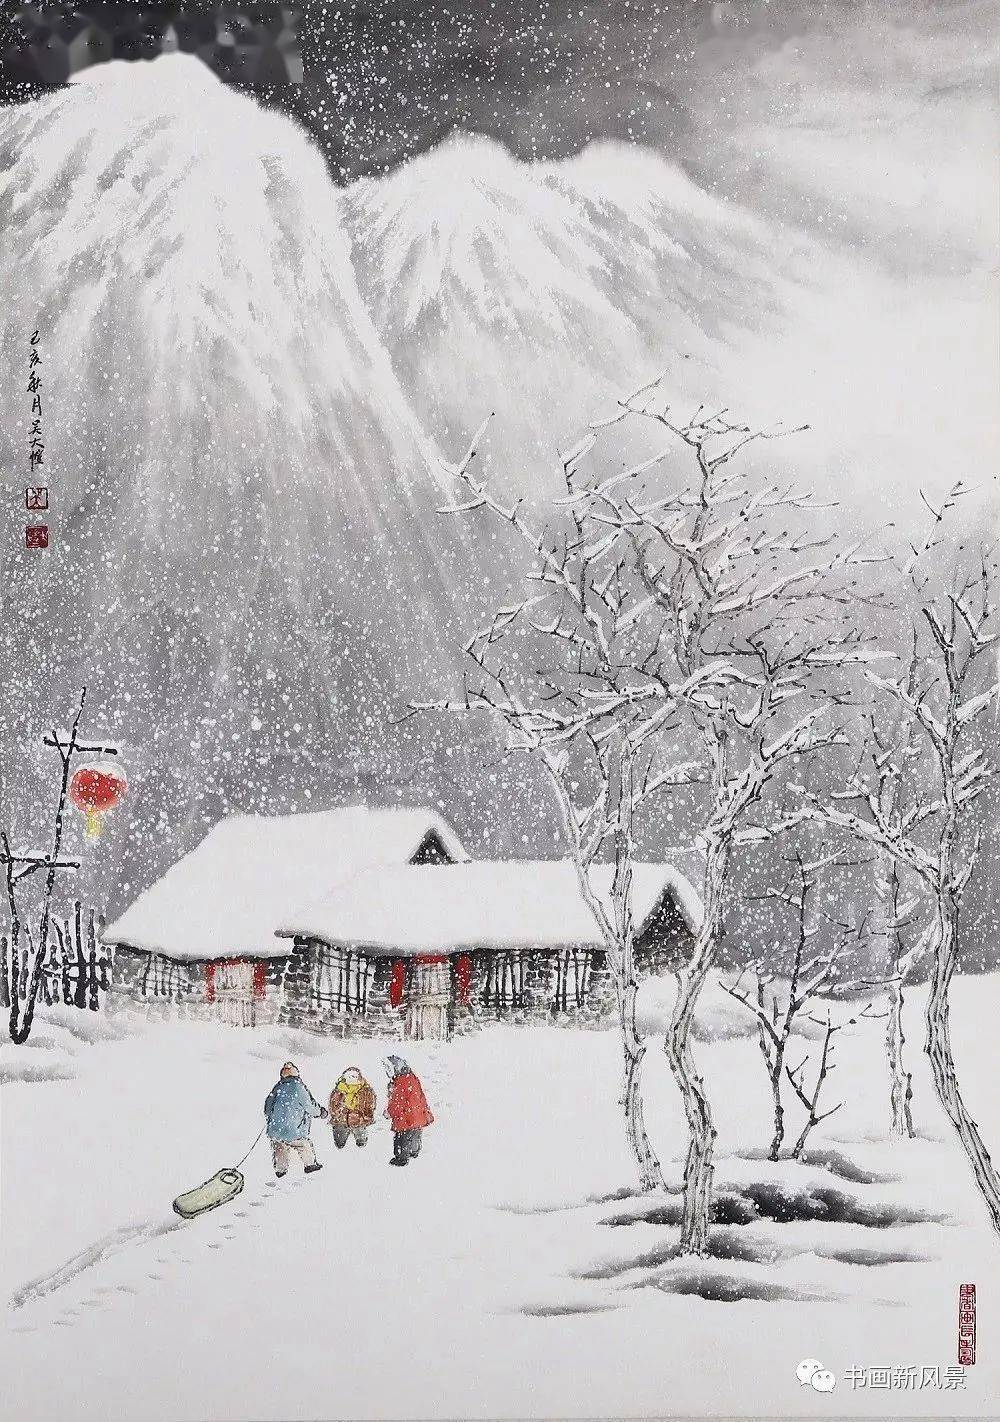 这是大雪节气,最温暖的36幅雪景画!